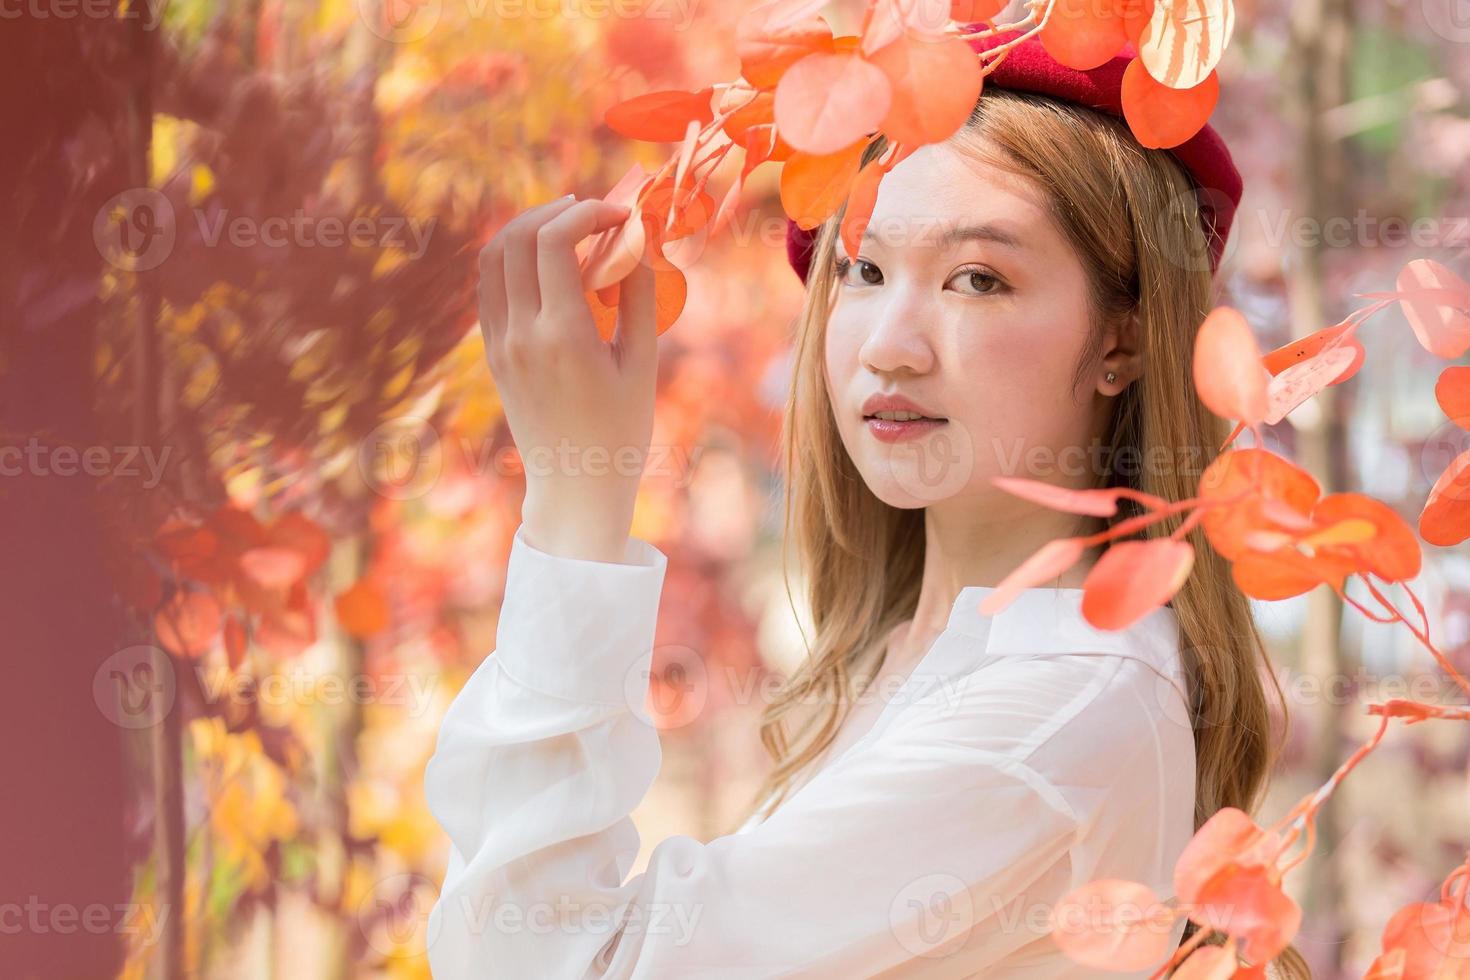 asiatico donna chi indossa bianca camicia e rosso berretto sta nel rosso-arancione partire come Forrest nel autunno. foto